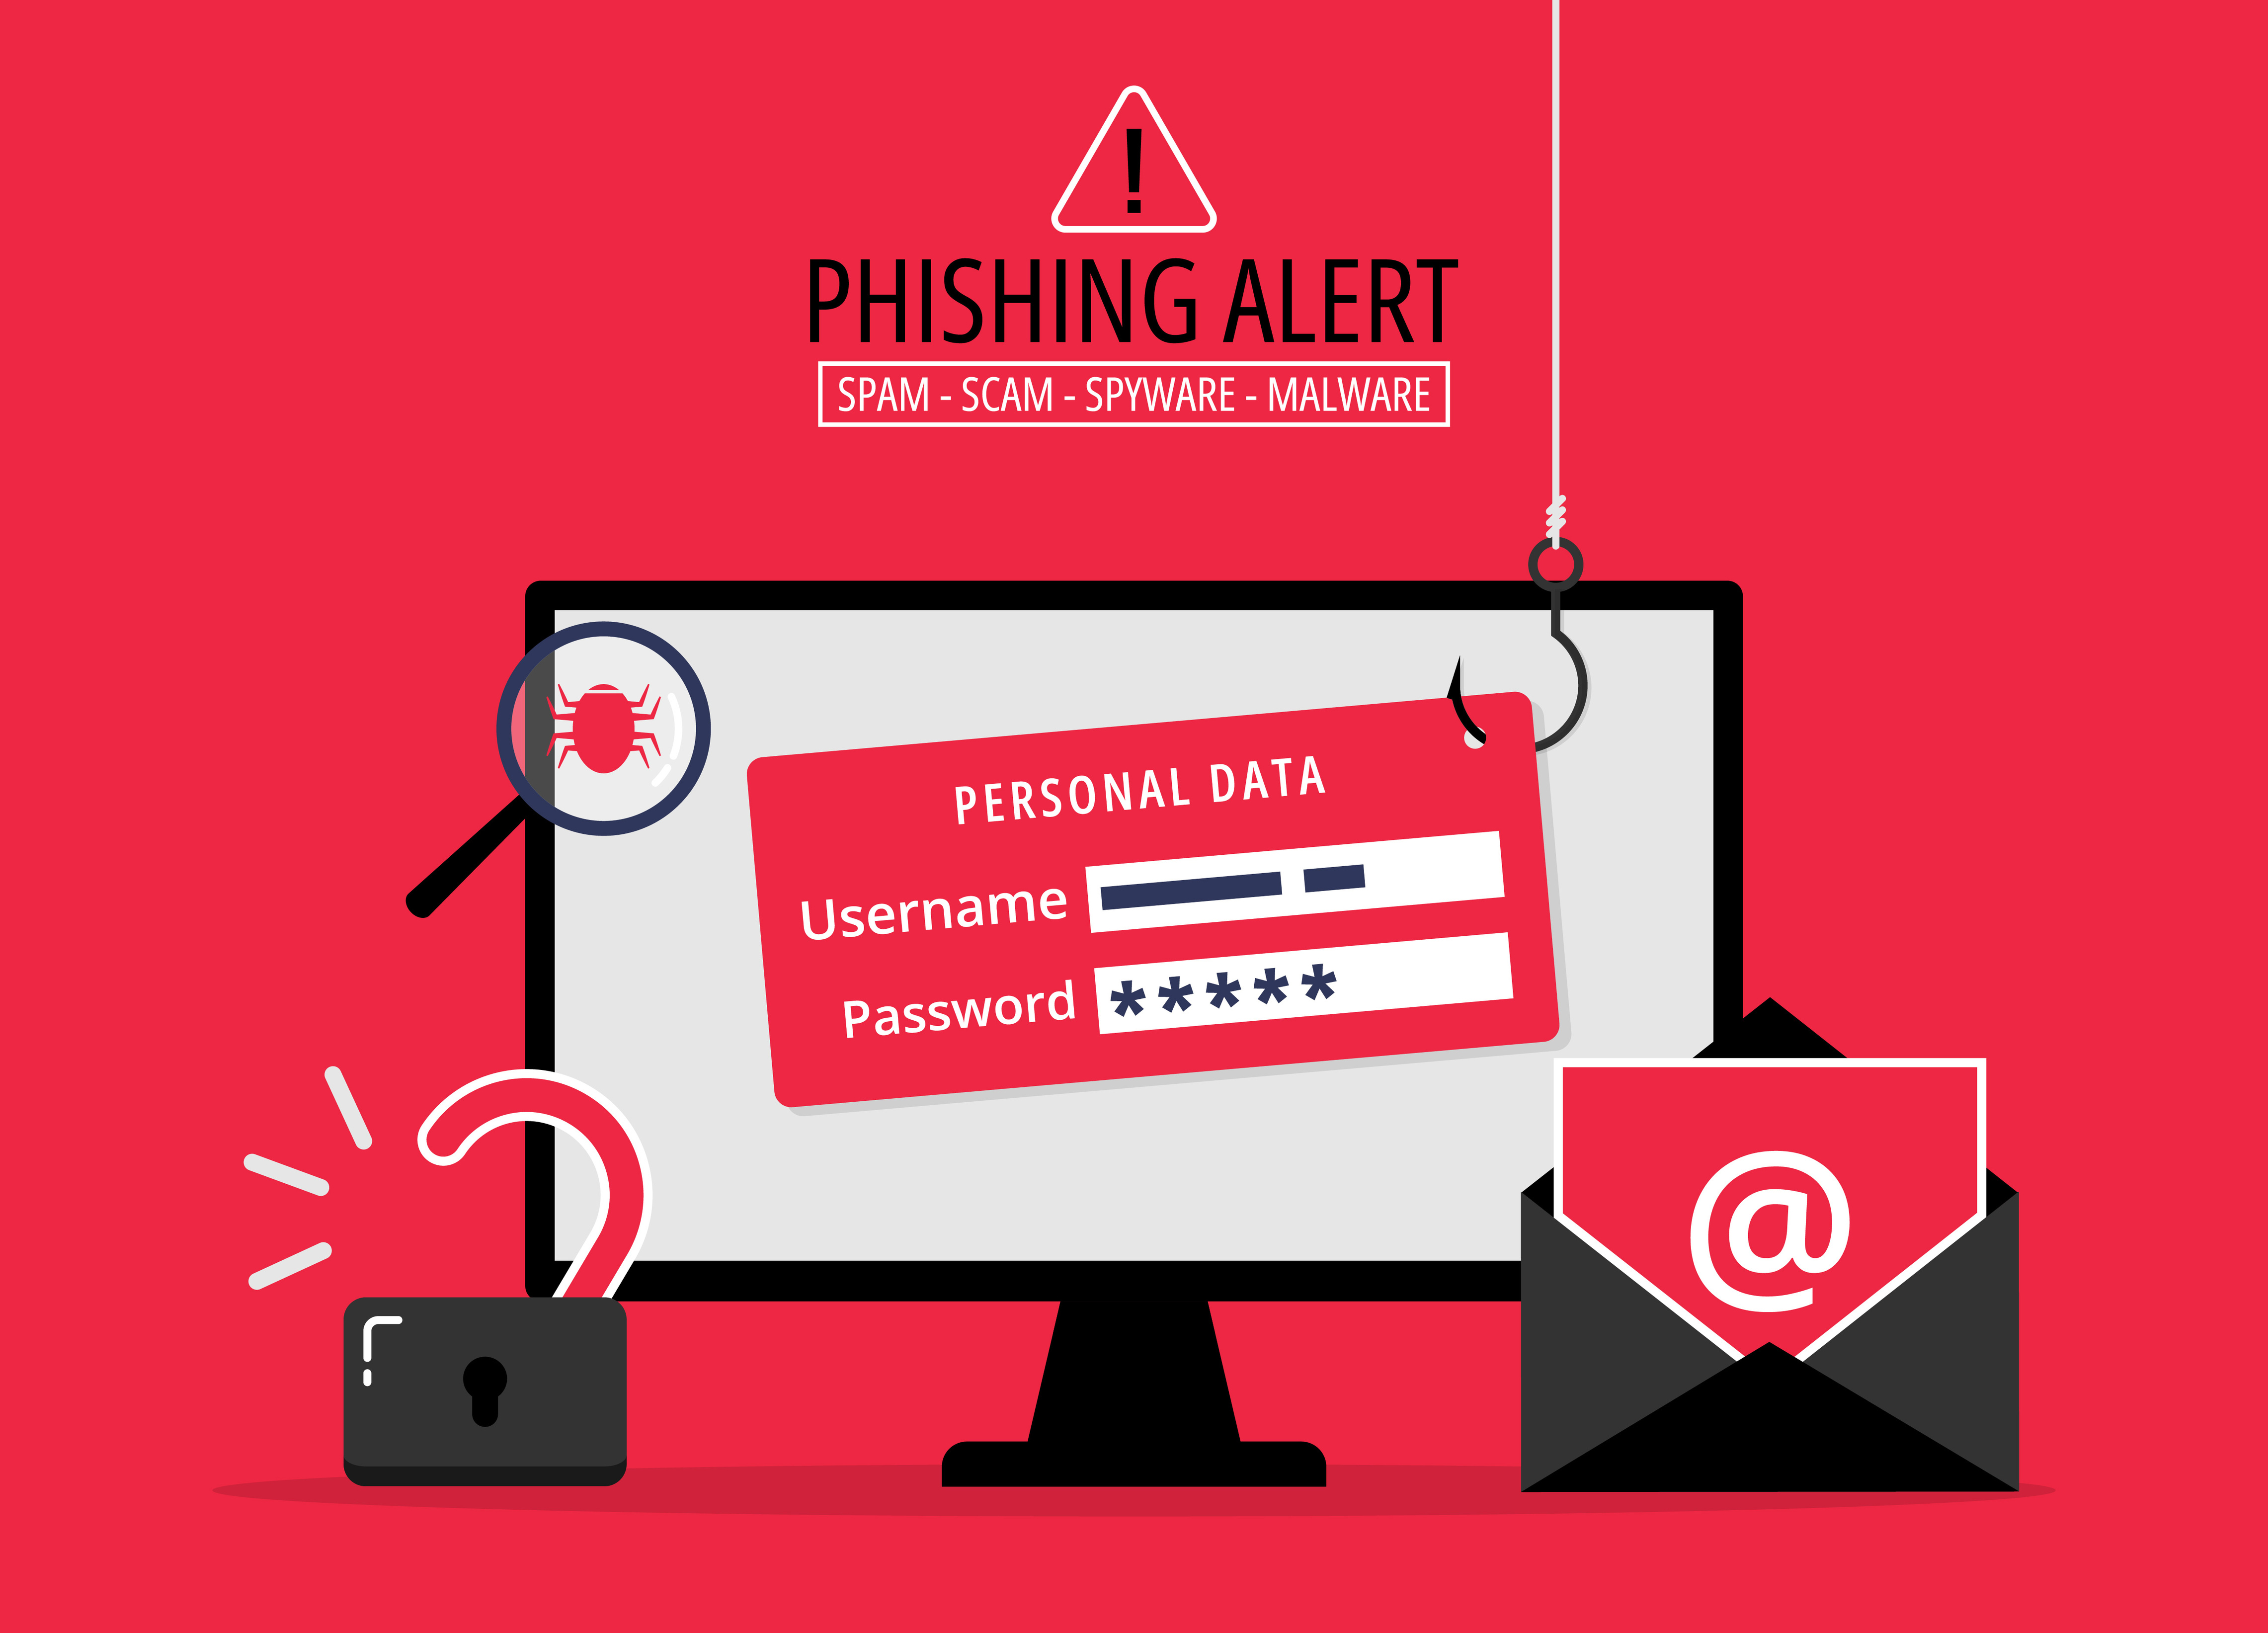 Phishing bait alert concept